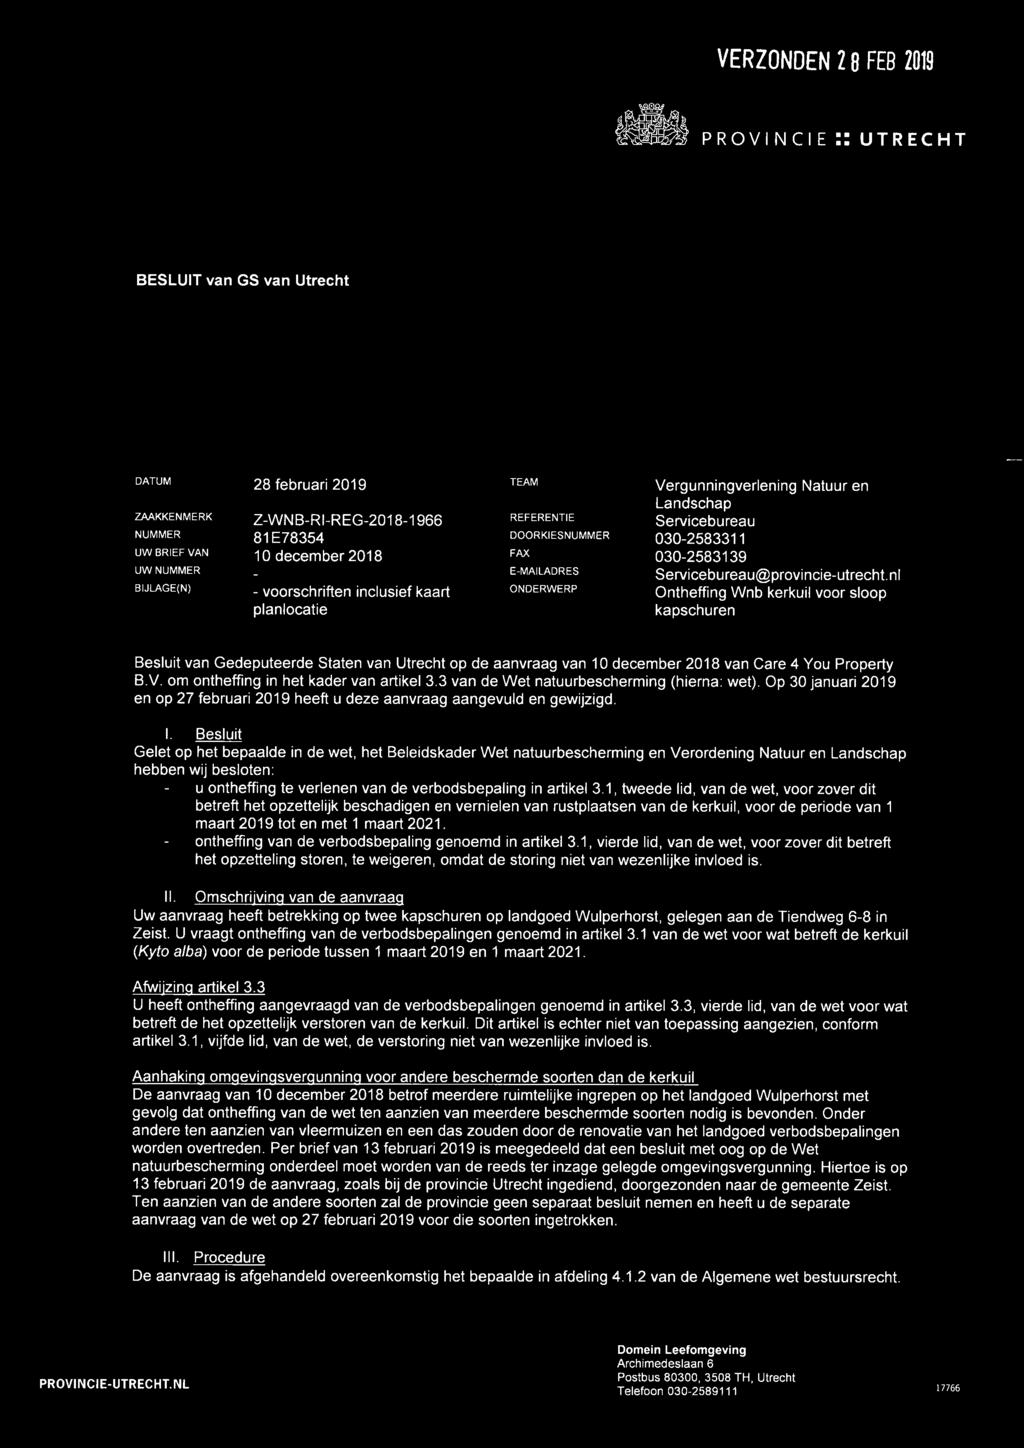 nl BIJLAGE(N) - voorschriften inclusief kaart ONDERWERP Ontheffing Wnb kerkuil voor sloop planlocatie kapschuren Besluit van Gedeputeerde Staten van Utrecht op de aanvraag van 10 december 2018 van